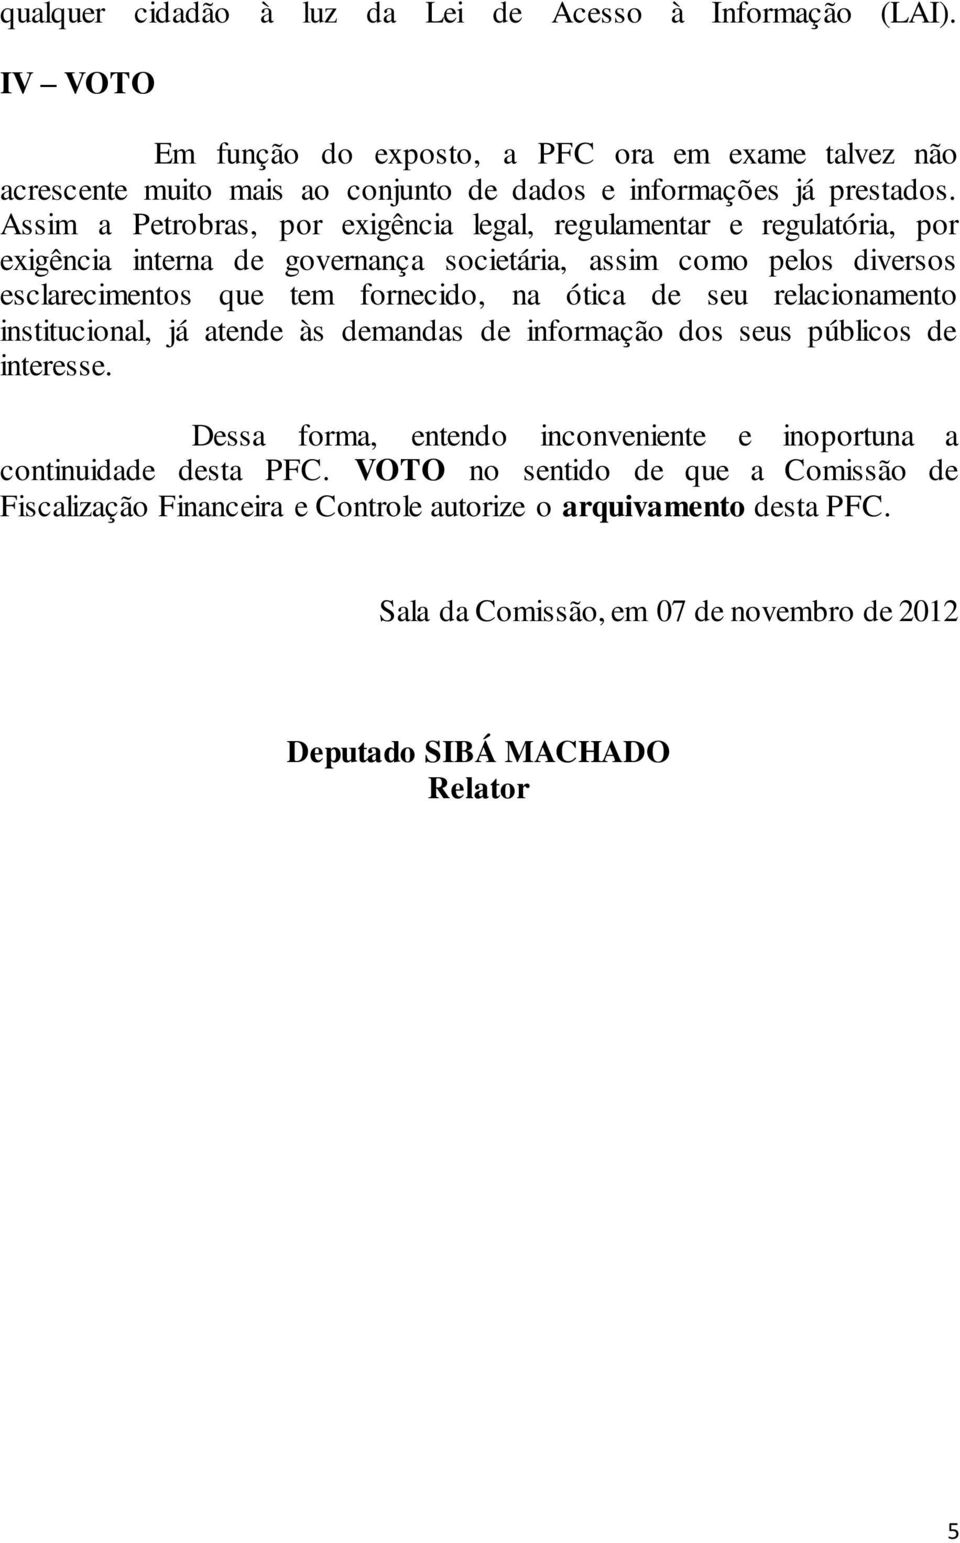 Assim a Petrobras, por exigência legal, regulamentar e regulatória, por exigência interna de governança societária, assim como pelos diversos esclarecimentos que tem fornecido, na